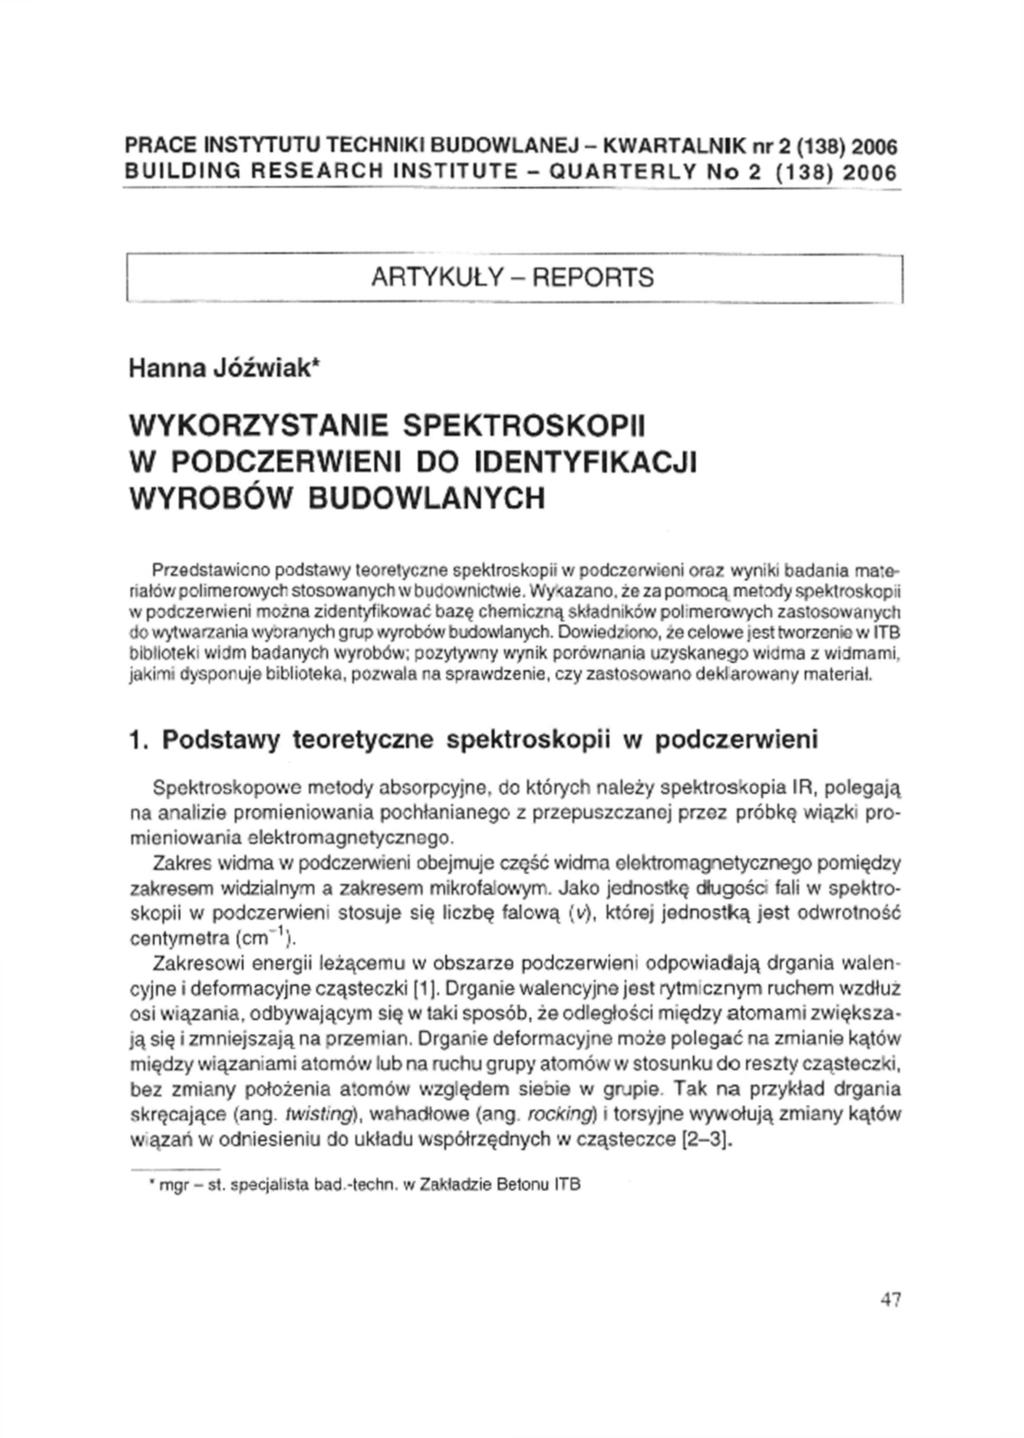 PRACE INSTYTUTU TECHNIKI BUDOWLANEJ - KWARTALNIK nr 2 (138) 2006 BUILDING RESEARCH INSTITUTE - QUARTERLY No 2 (138) 2006 ARTYKUŁY - REPORTS Hanna Jóźwiak* WYKORZYSTANIE SPEKTROSKOPII W PODCZERWIENI